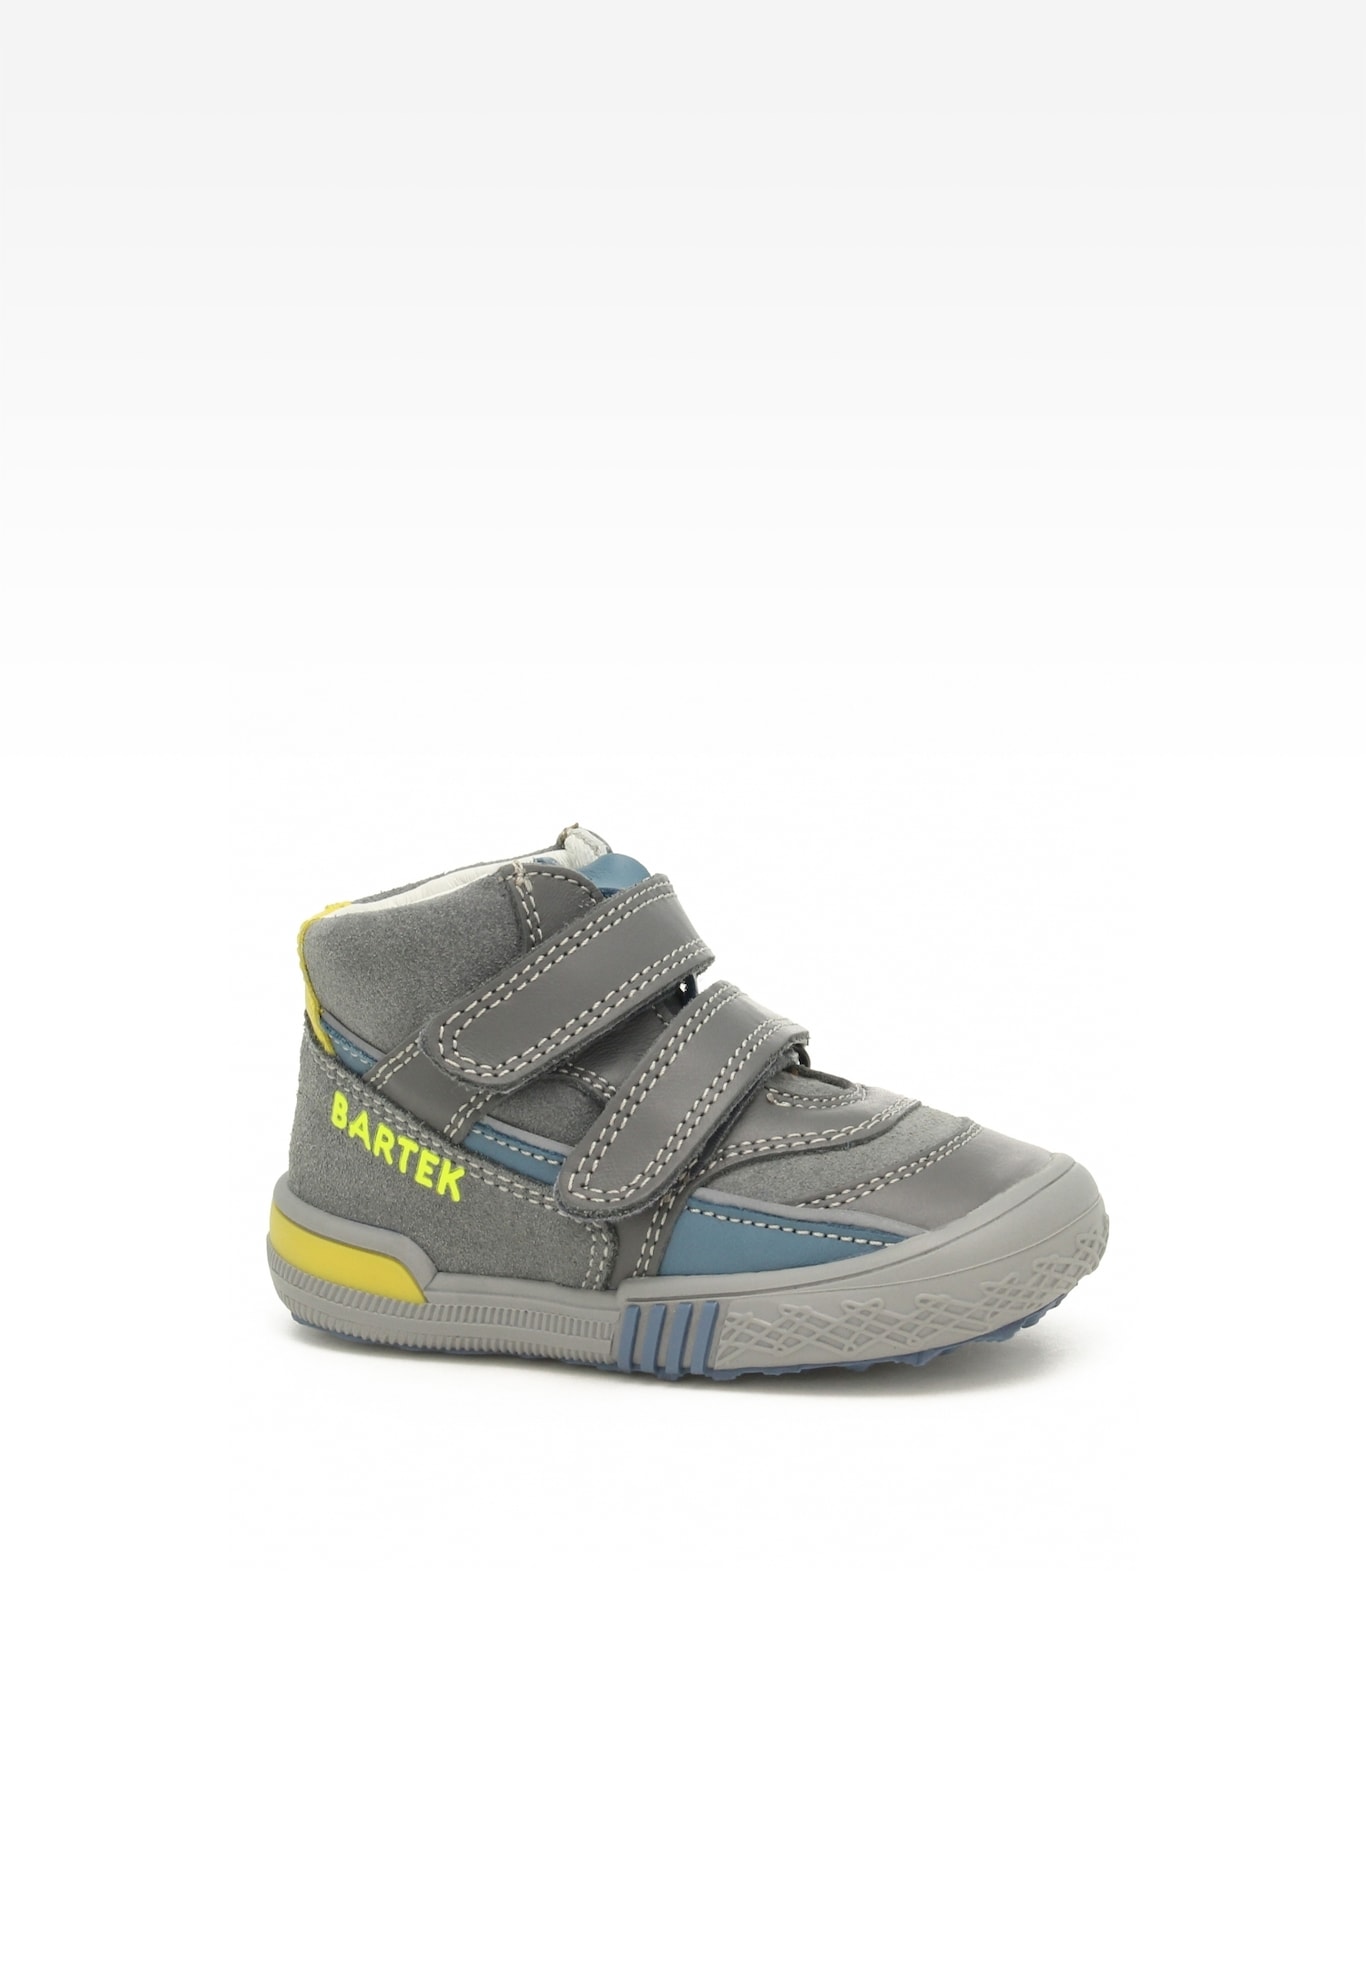 Sneakers BARTEK 91756-001, dla chłopców, szary